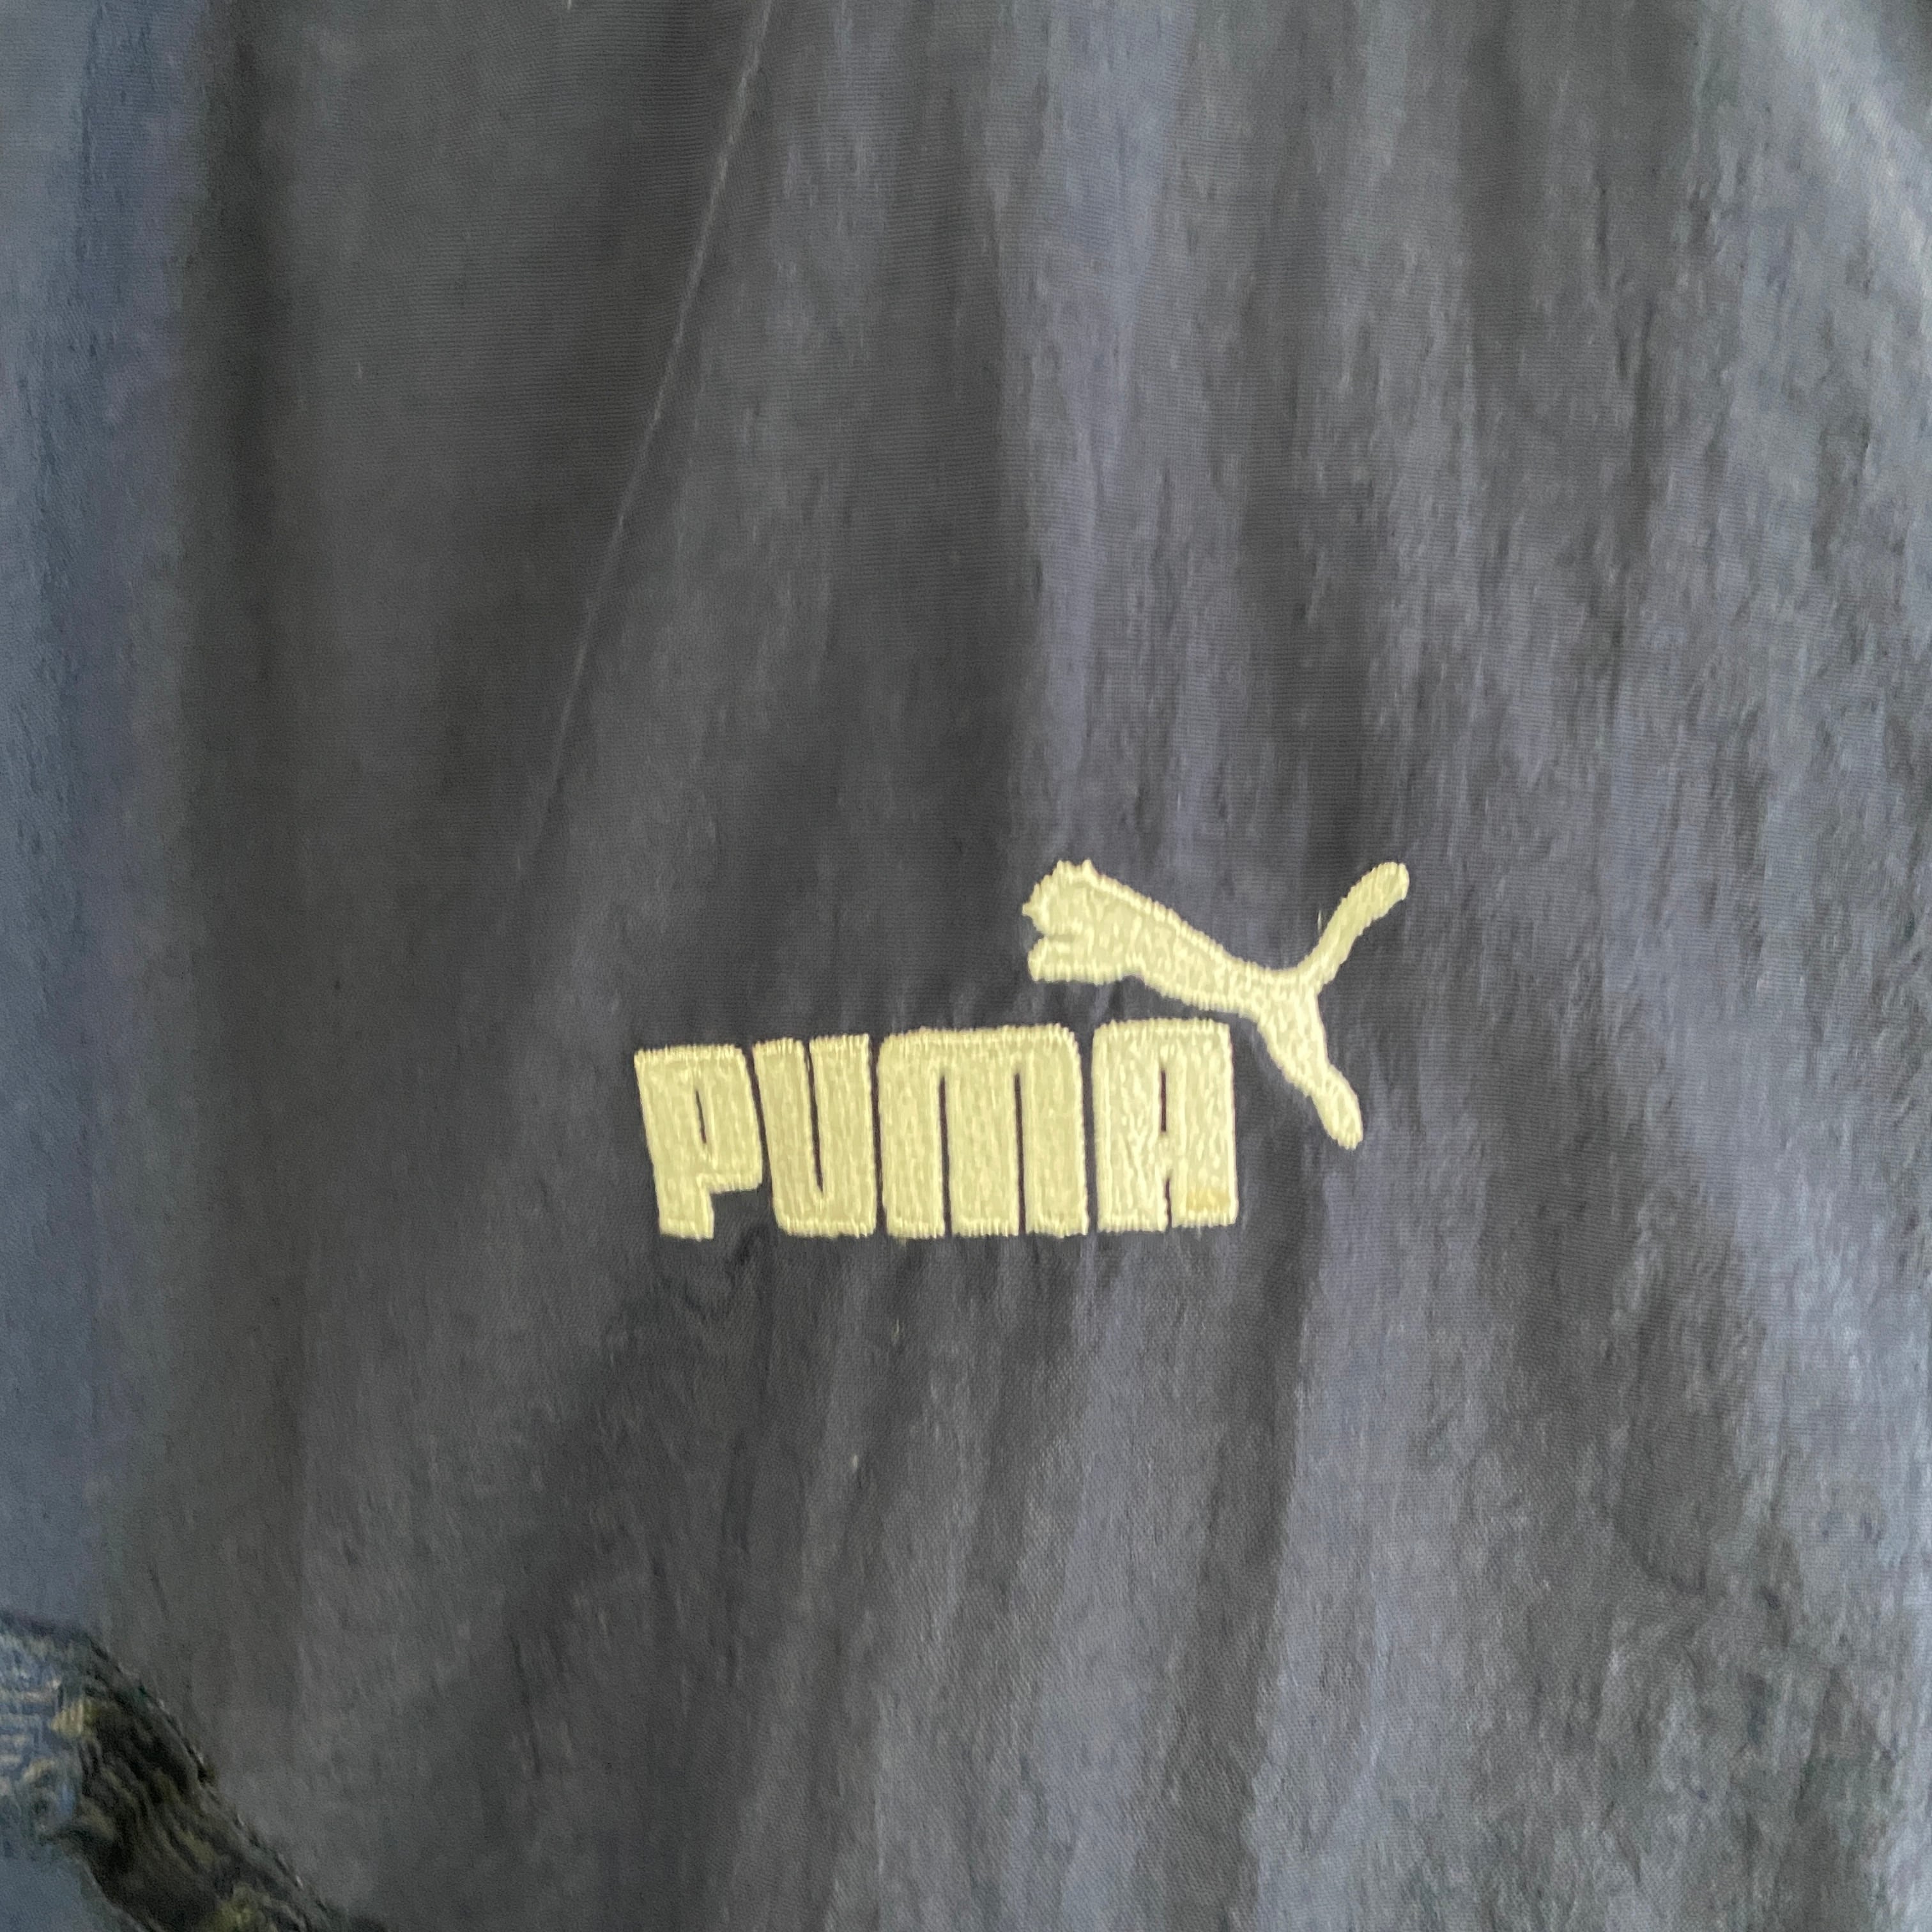 30 美品 PUMA サイドライン ビッグサイズ 刺繍ロゴ プーマ ジャケット